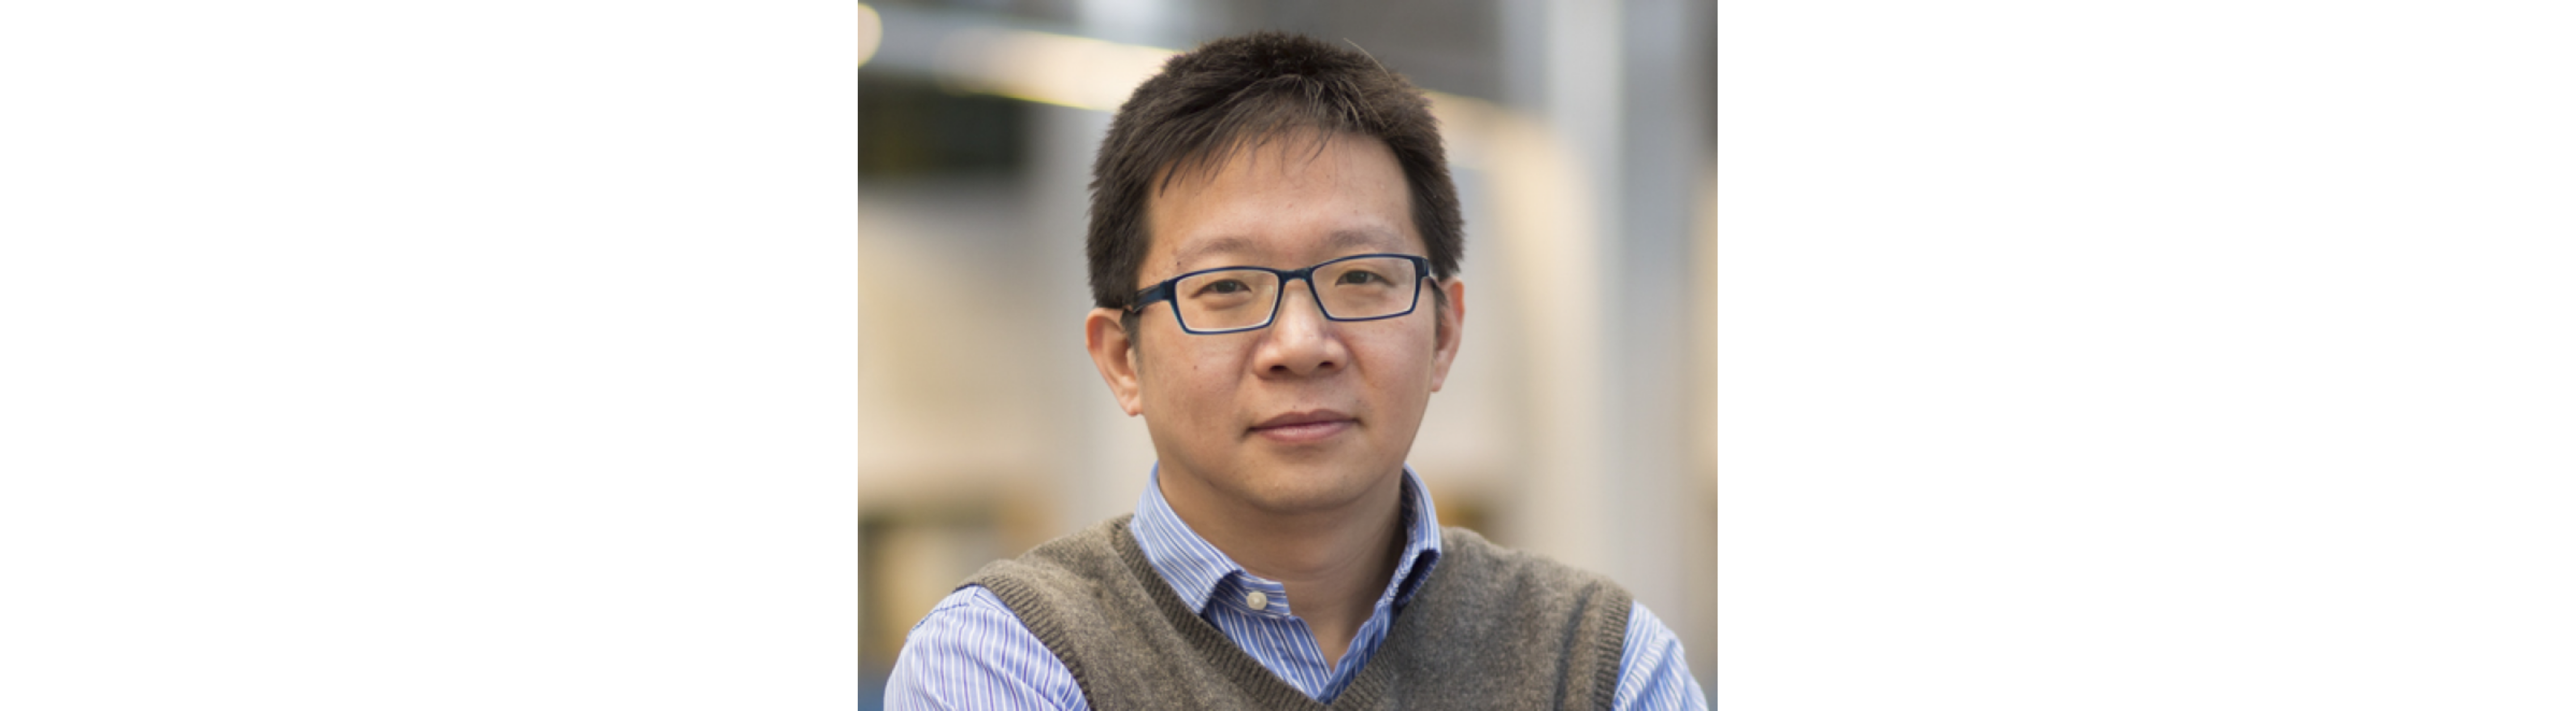 Alumni Kaleidoscope: Charlie Wang - PhD(MECH), Mphil(MECH)